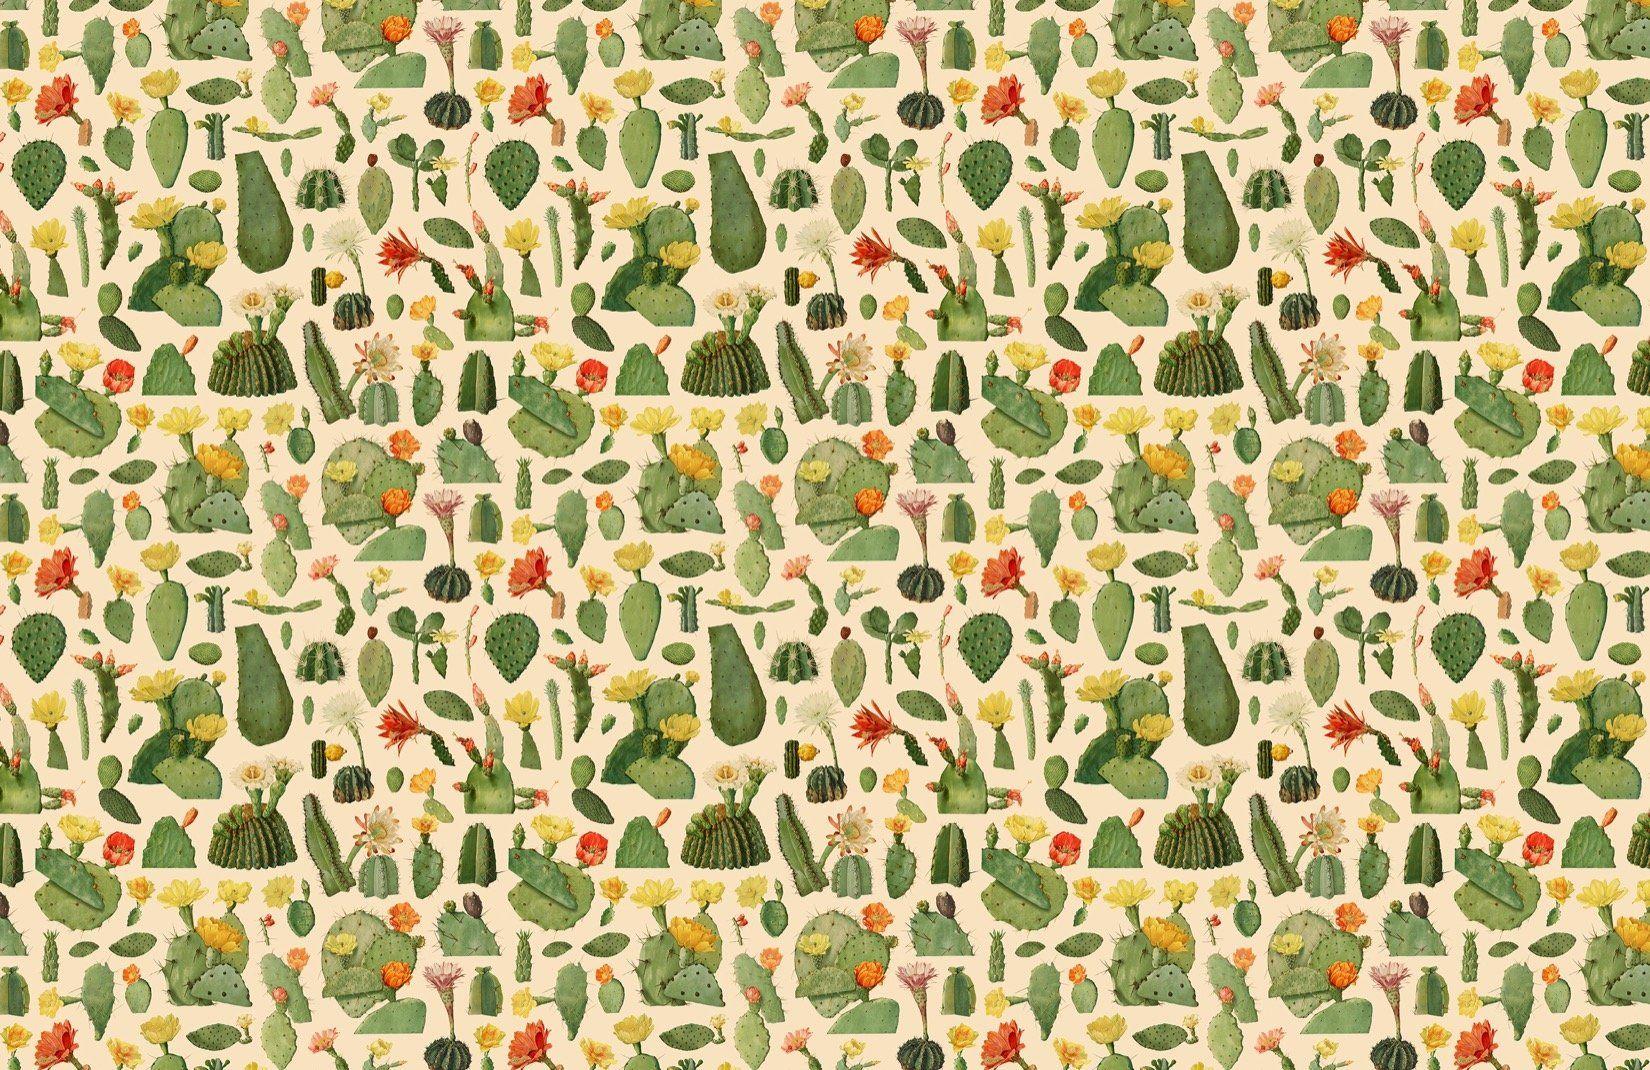 Hình nền 1650x1070 Cactus Succulent.  Thiết kế cây xương rồng xanh